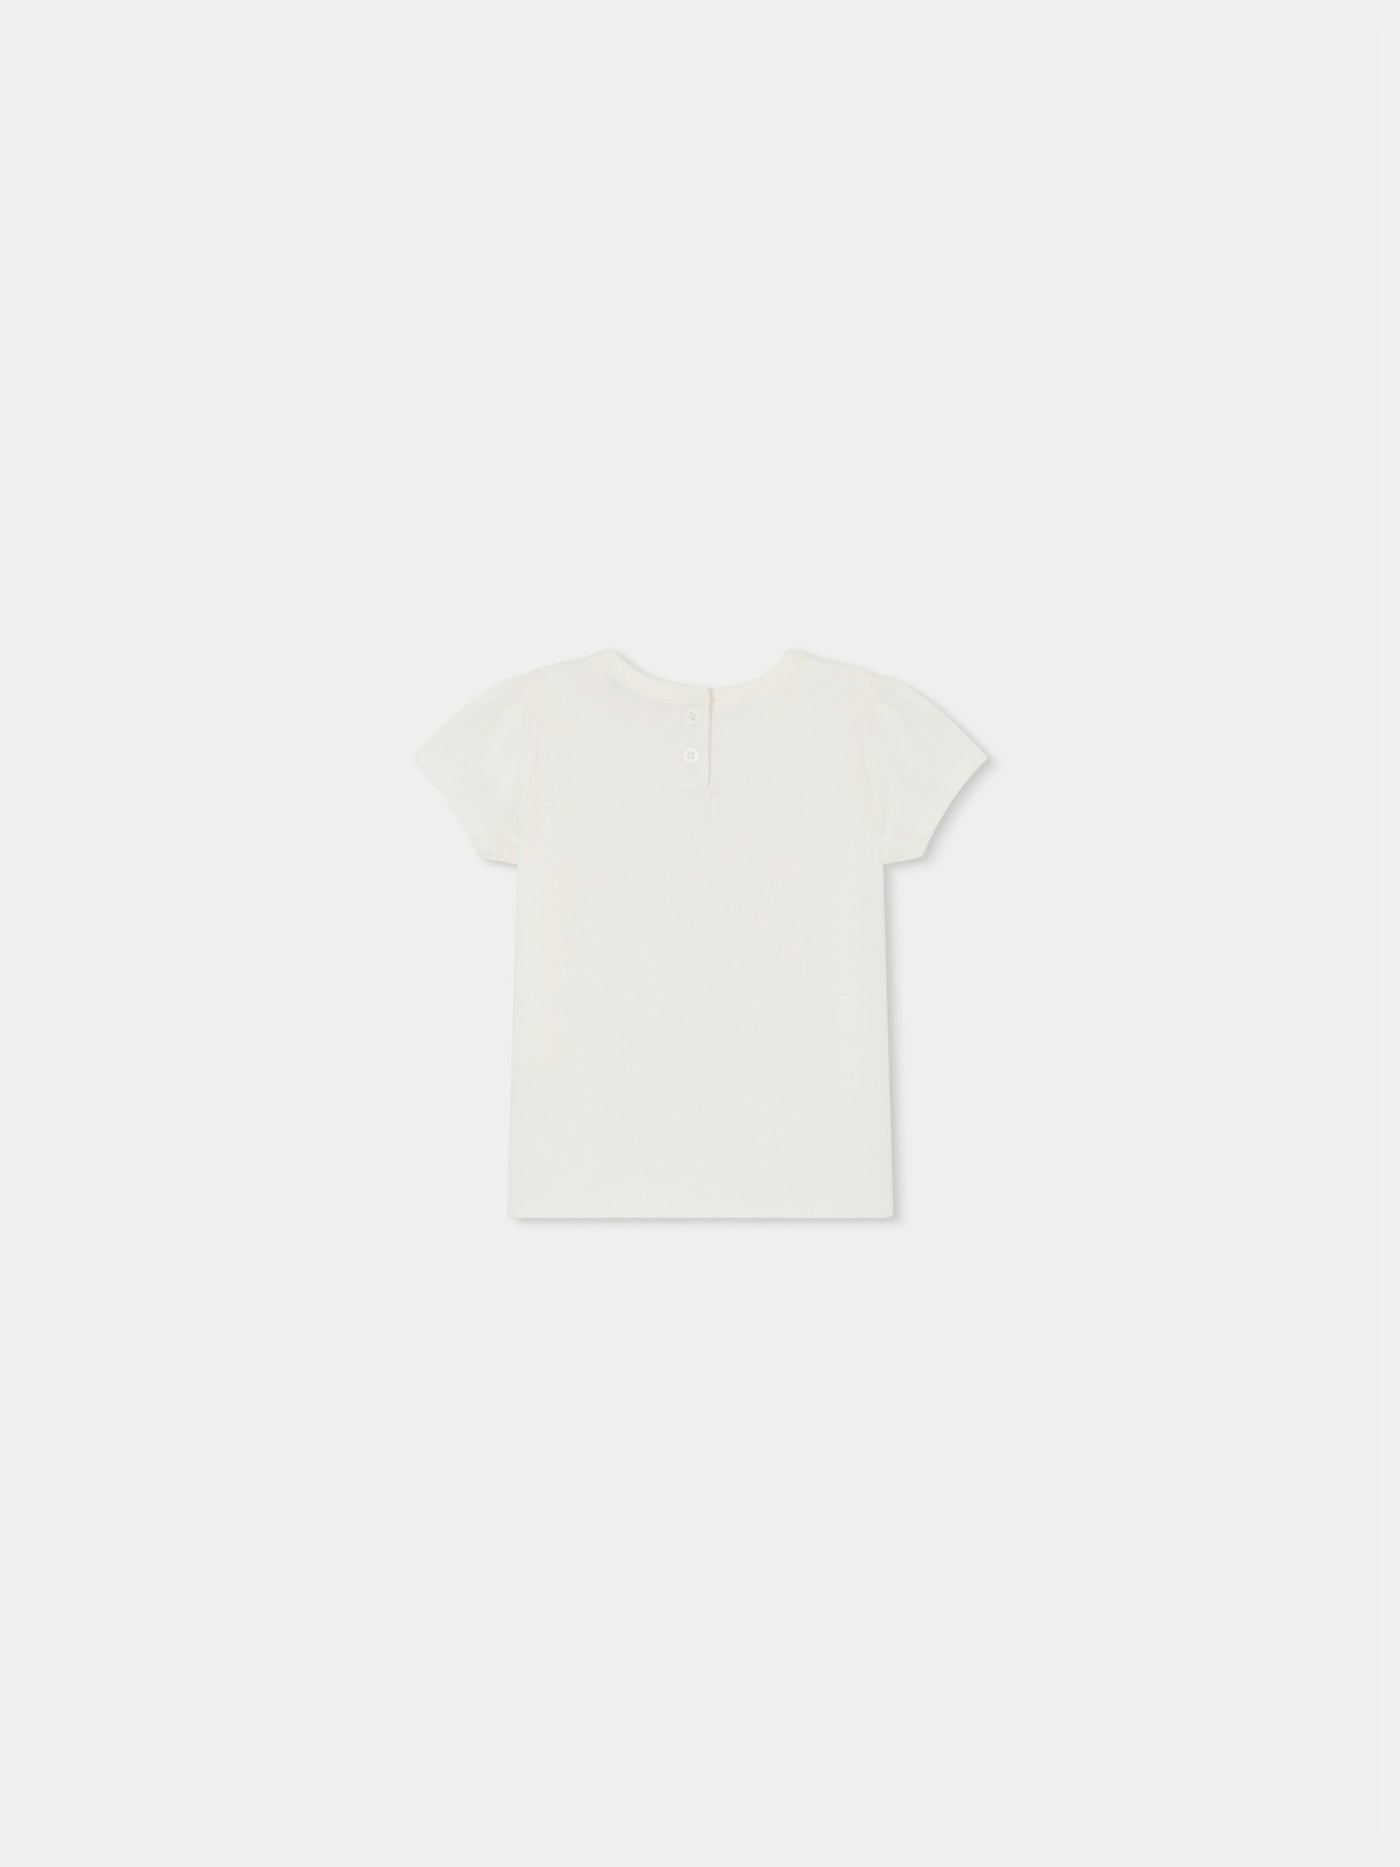 Cira T-shirt milk white